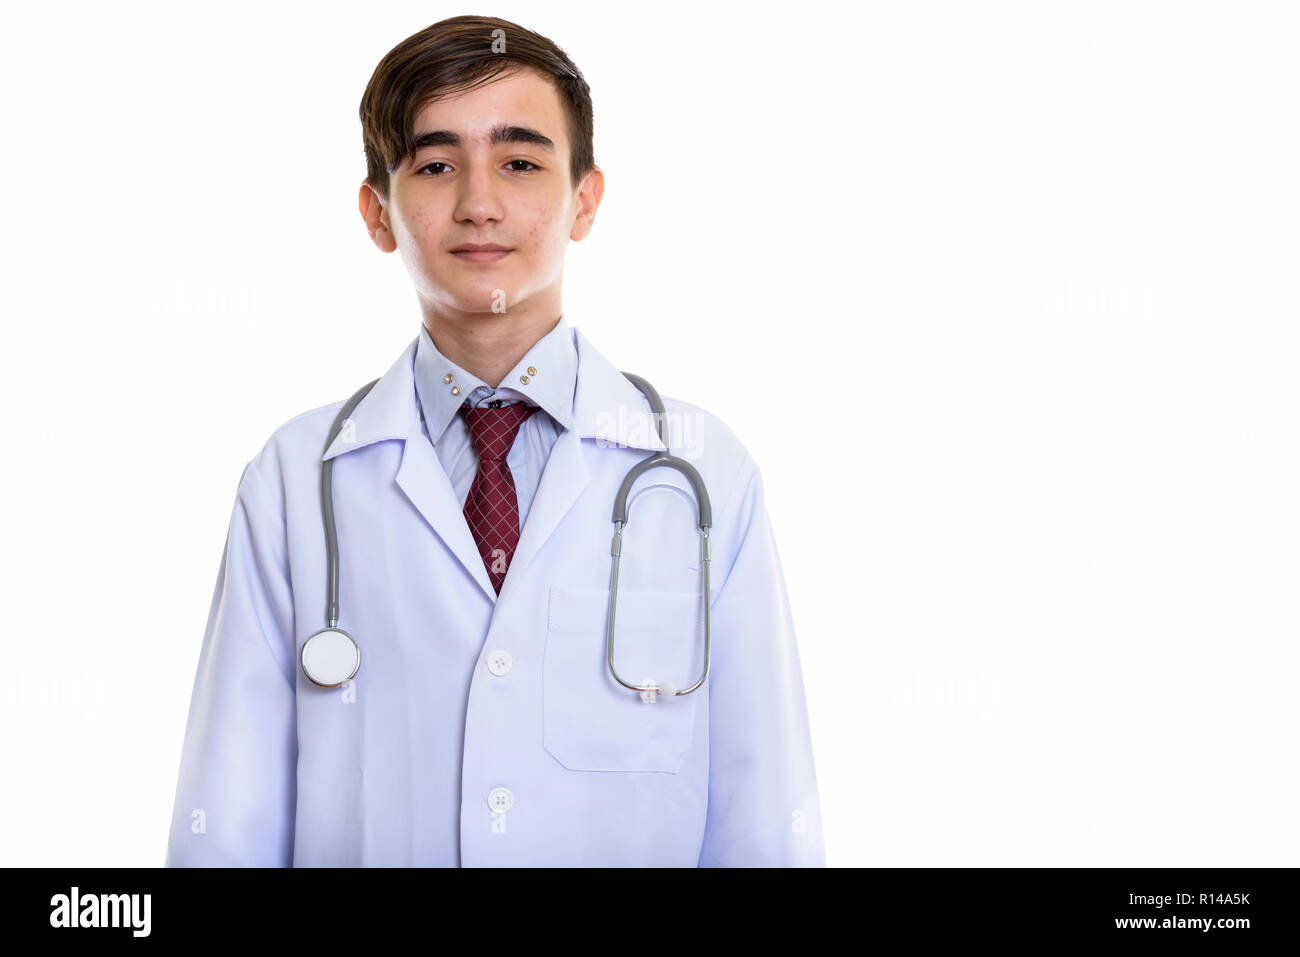 Foto de estudio de joven apuesto doctor adolescente persa Foto de stock